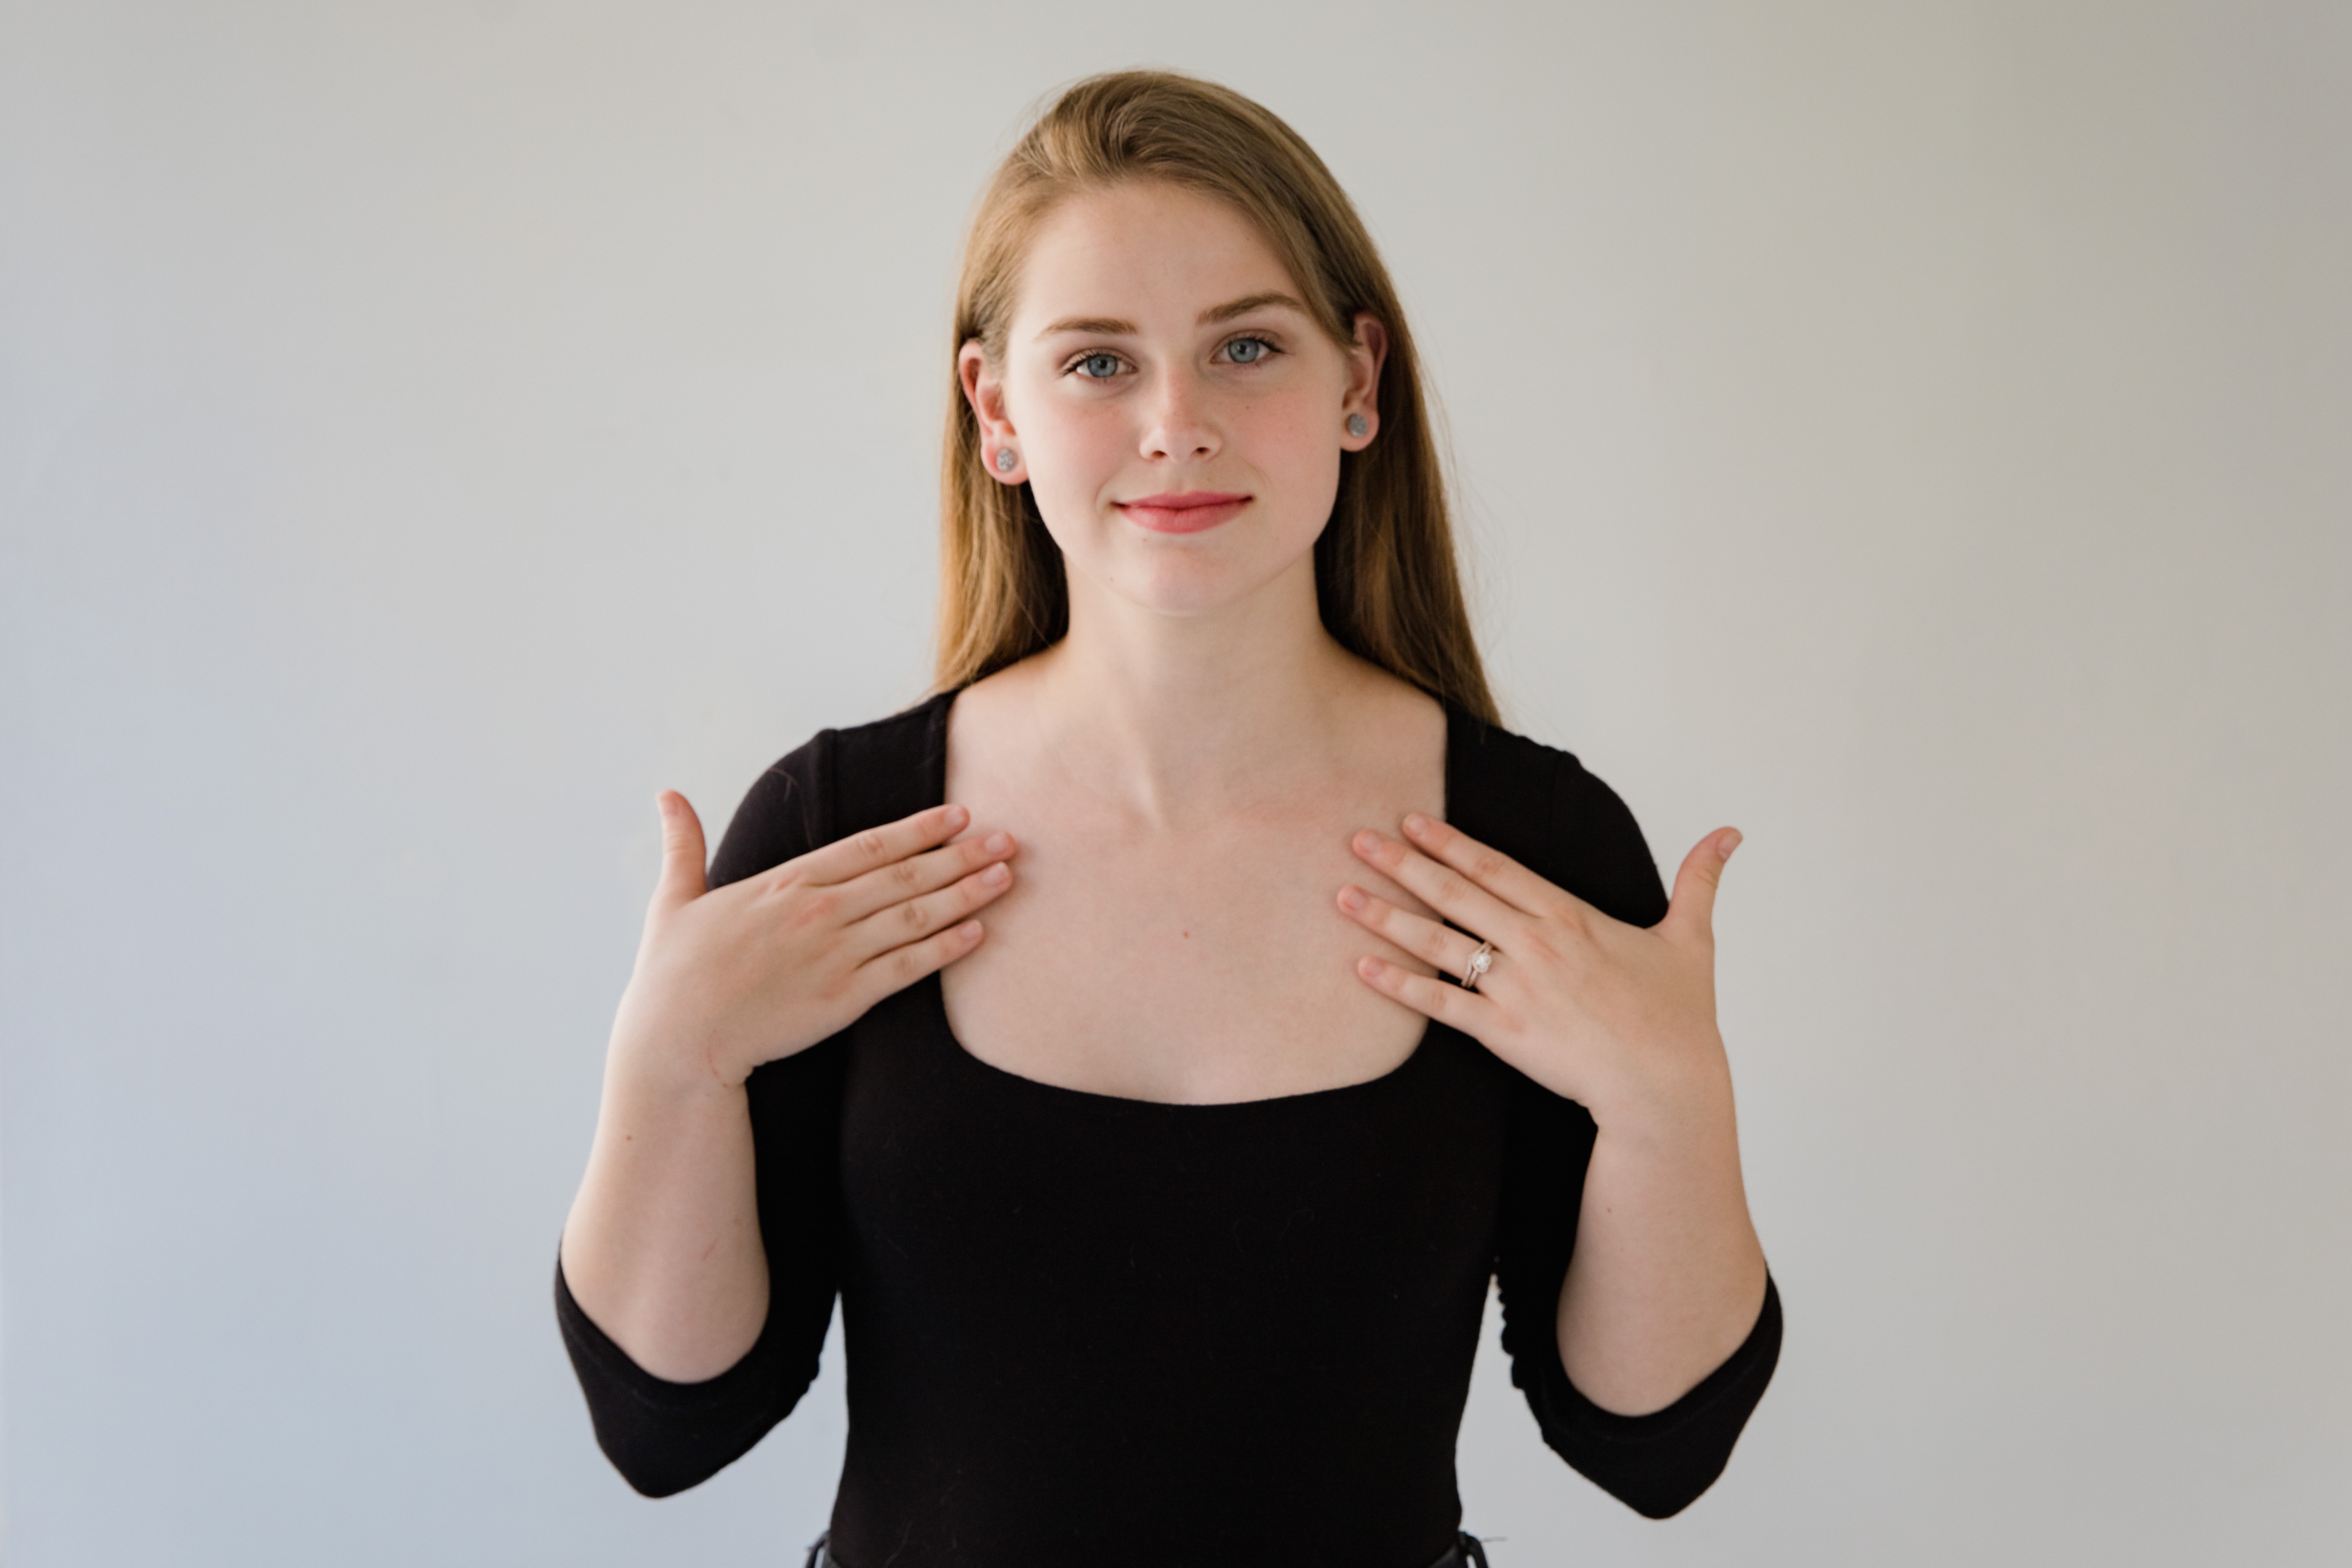 Lenguaje de señas: La Semana Internacional de las Personas Sordas